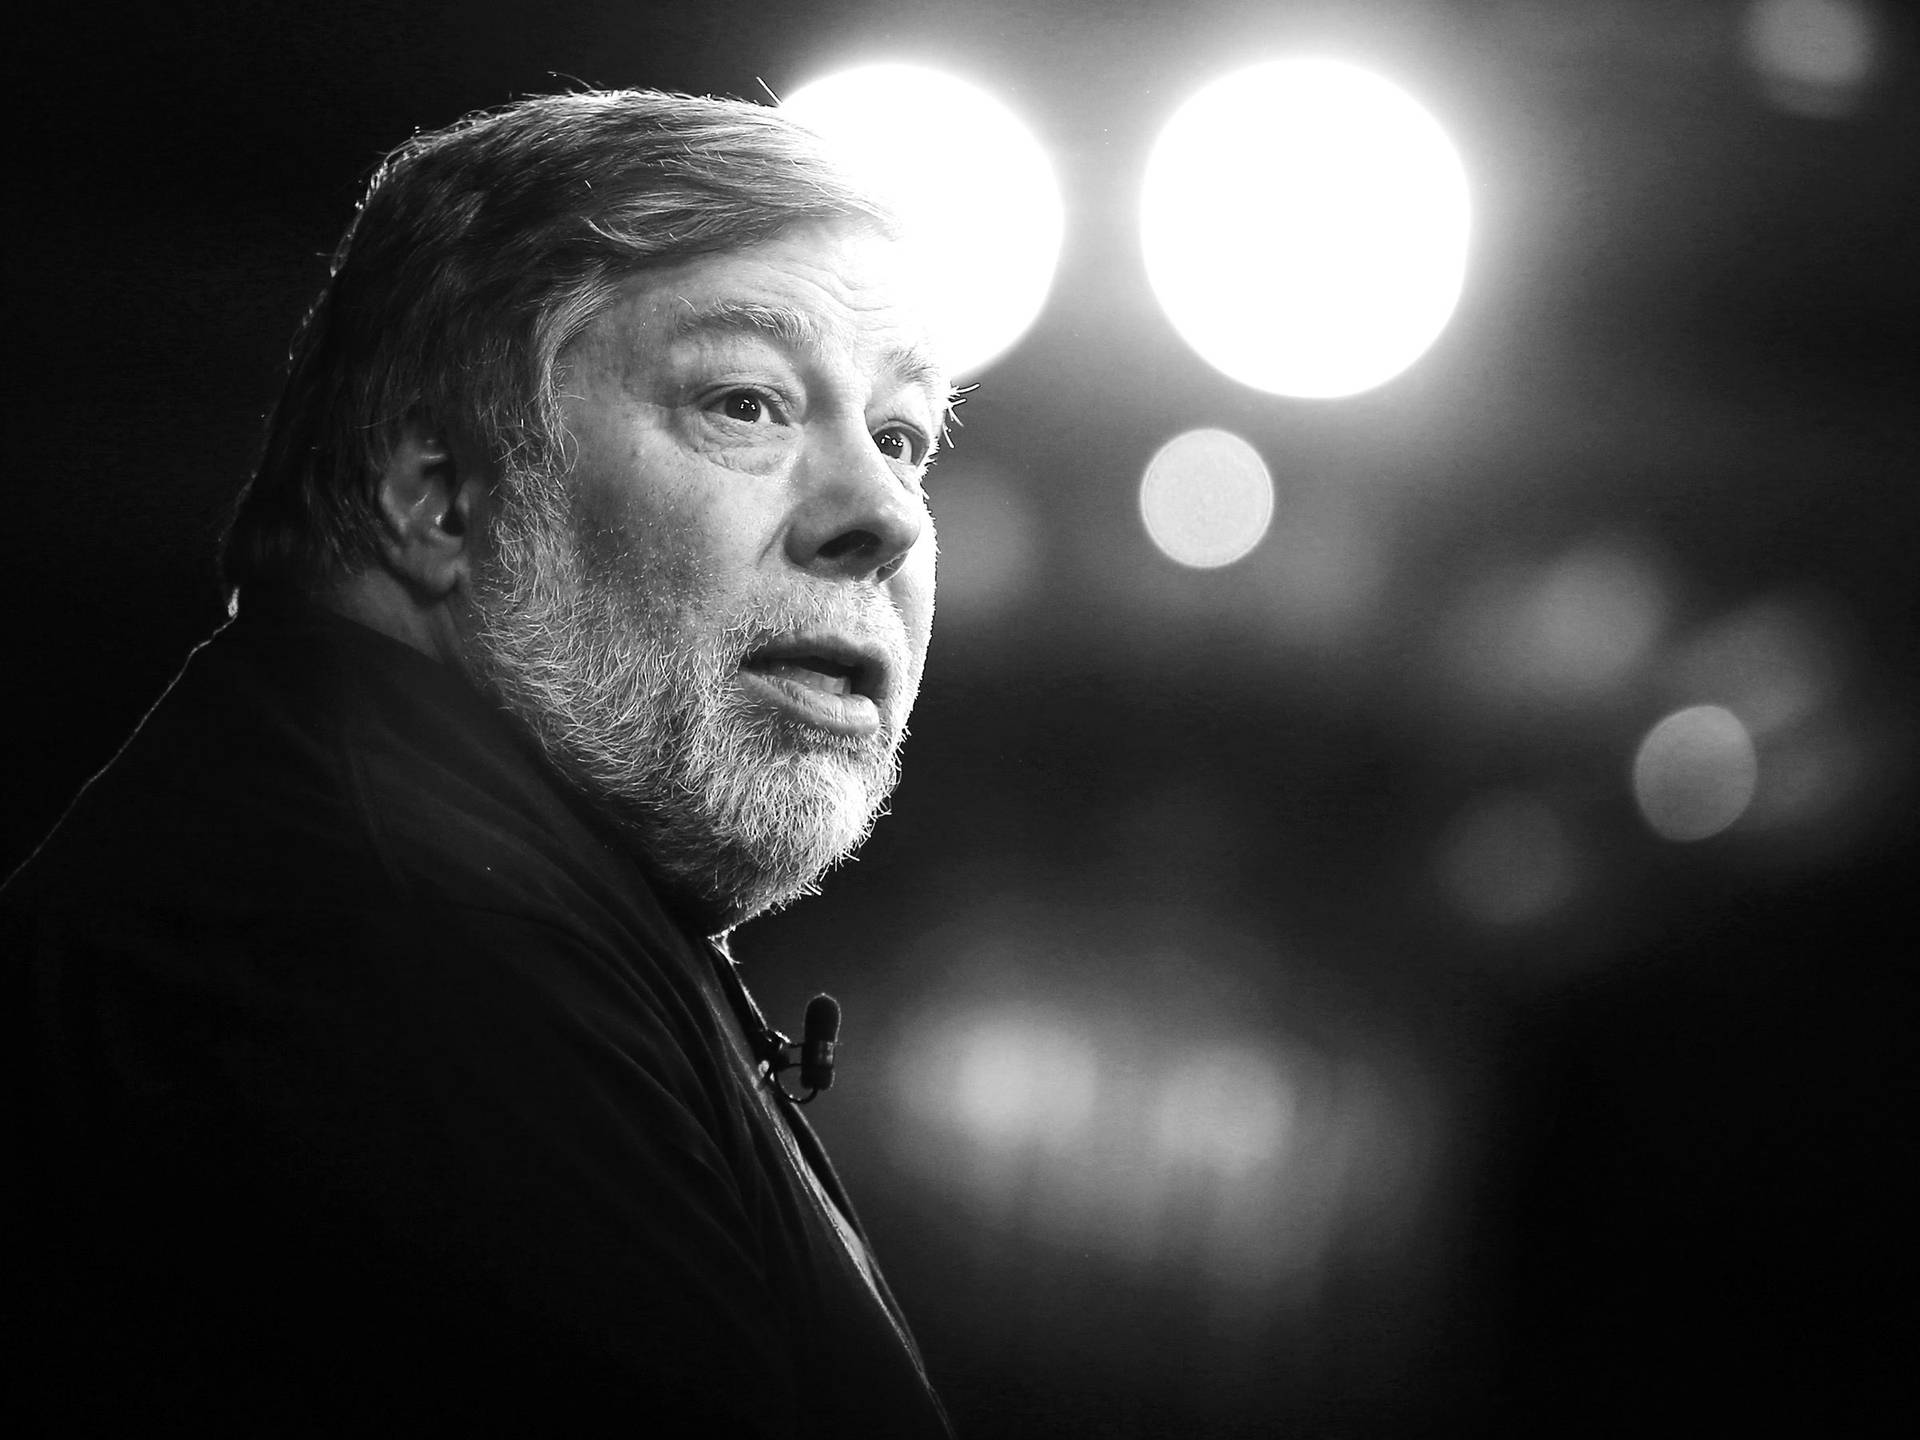 Steve Wozniak 2400 X 1800 Wallpaper